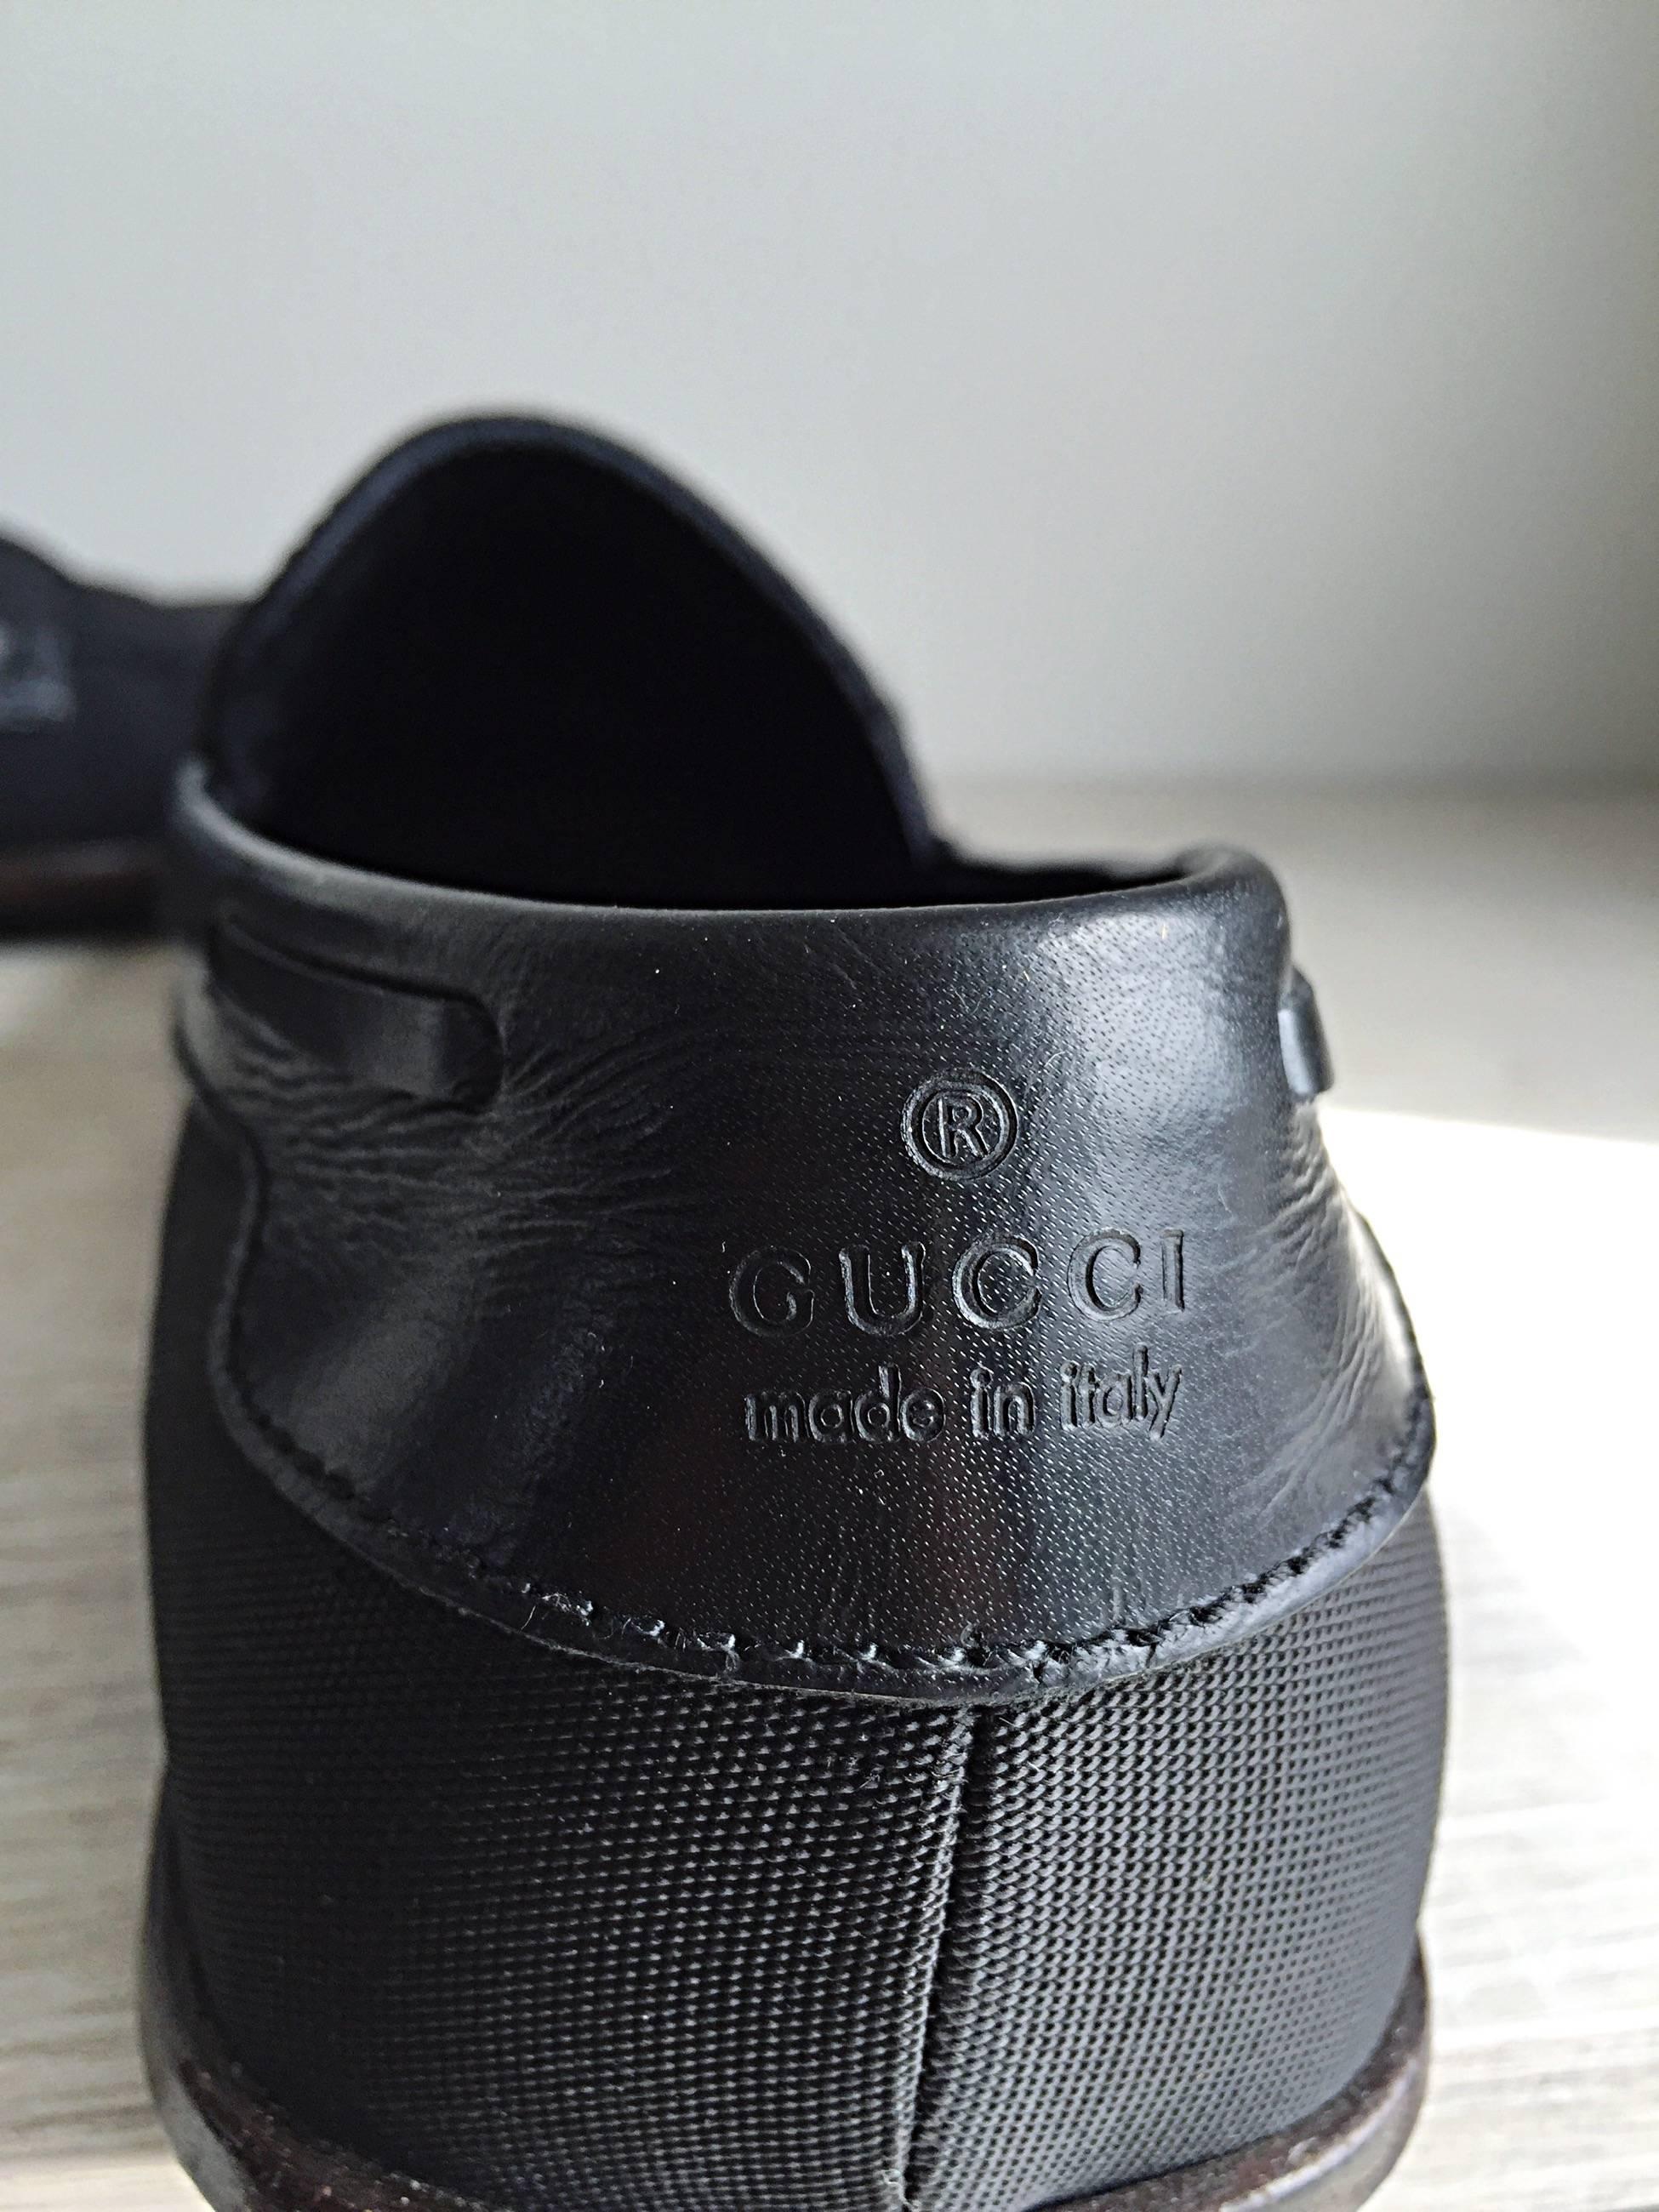 Schwarze Slipper aus Nylon von GUCCI by TOM FORD für Herren. Kann leicht nach oben oder unten gekleidet werden. Aus einer der ersten Kollektionen, die Ford bei Gucci entwarf. Hergestellt in Italien
Markierte Größe US 8 (fällt größengerecht aus)